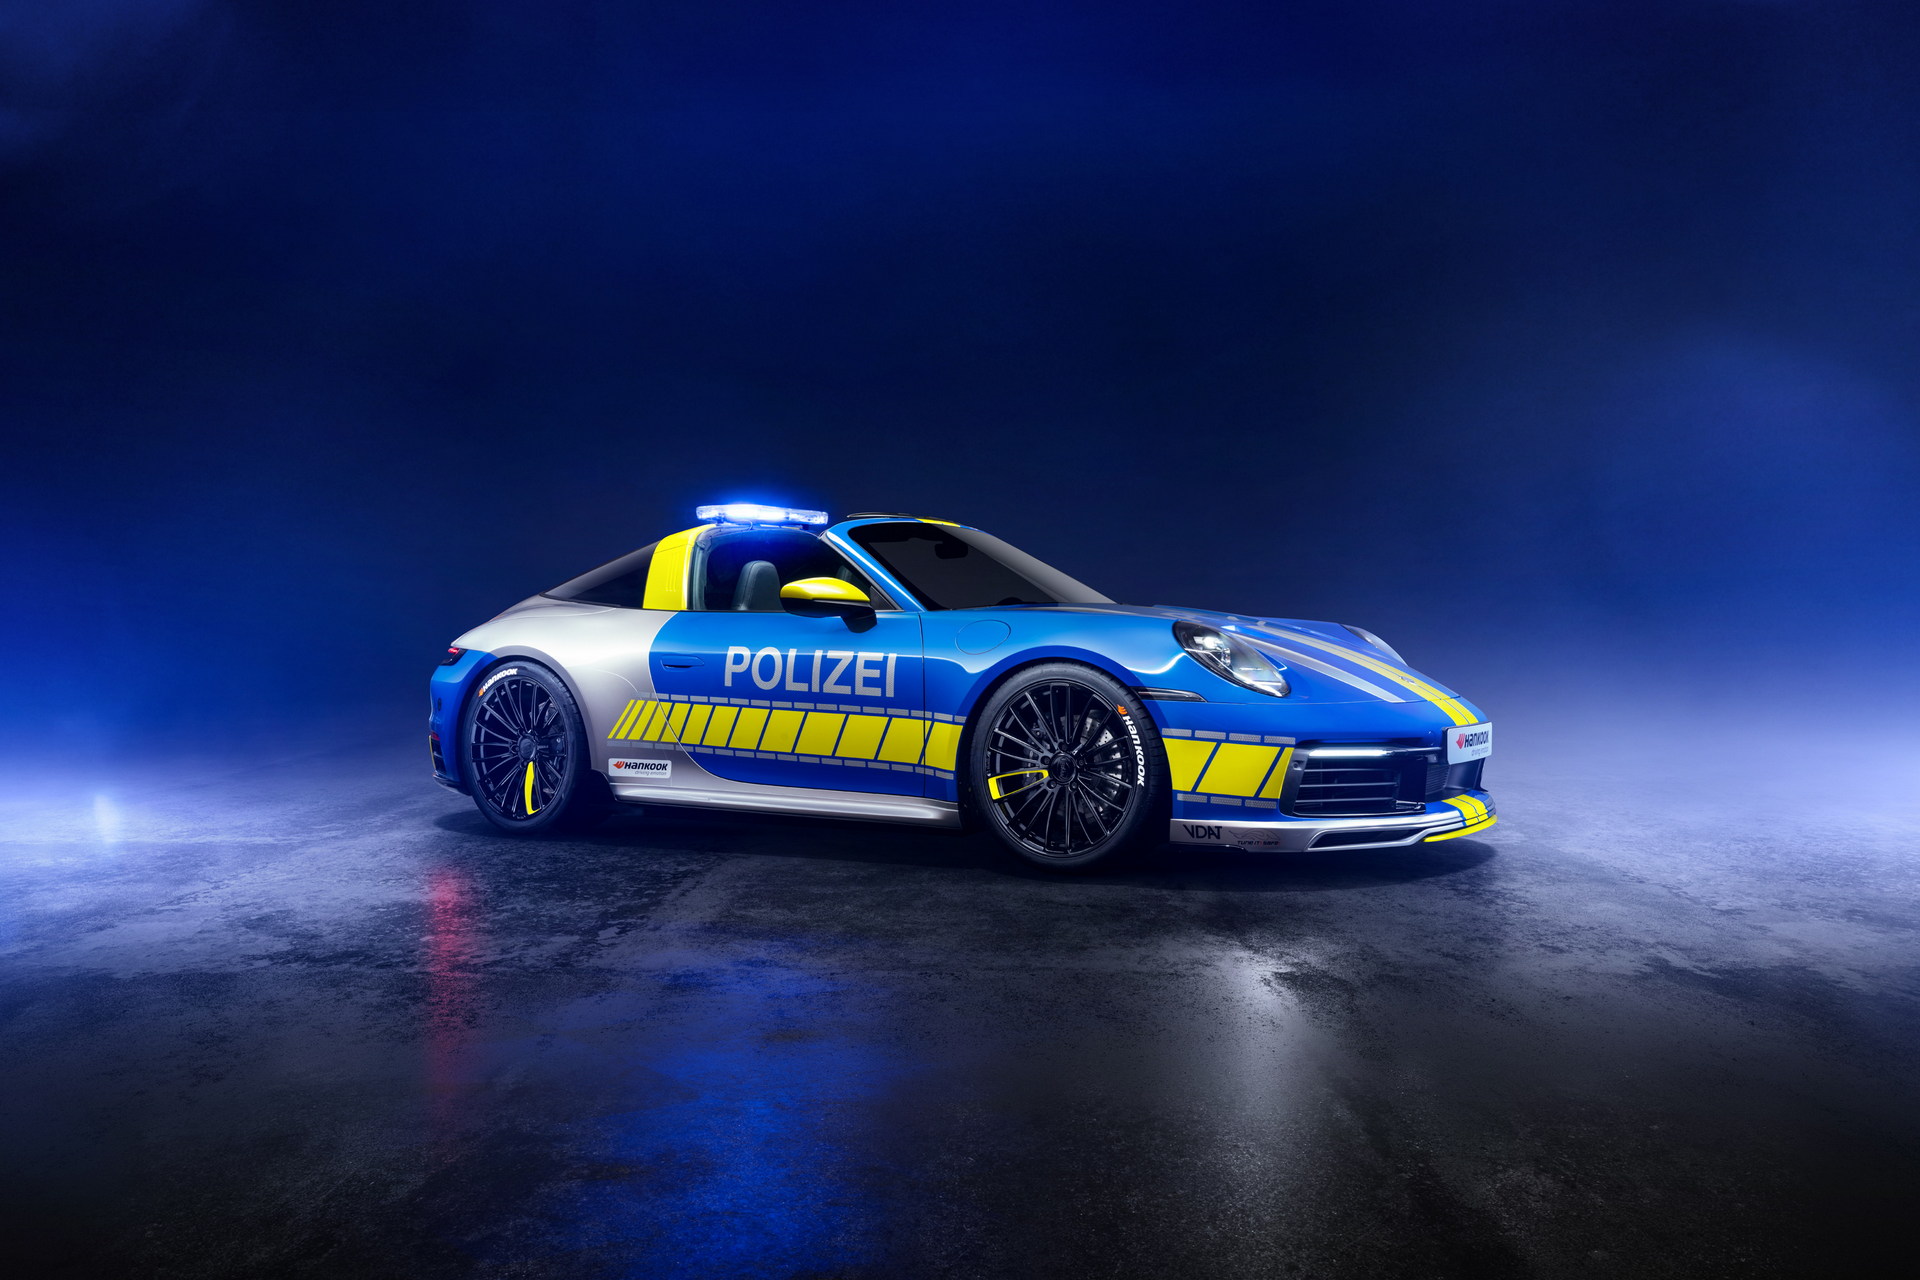 Policyjne Porsche 911 w wersji Targa? TechArt pokazuje, że to możliwe